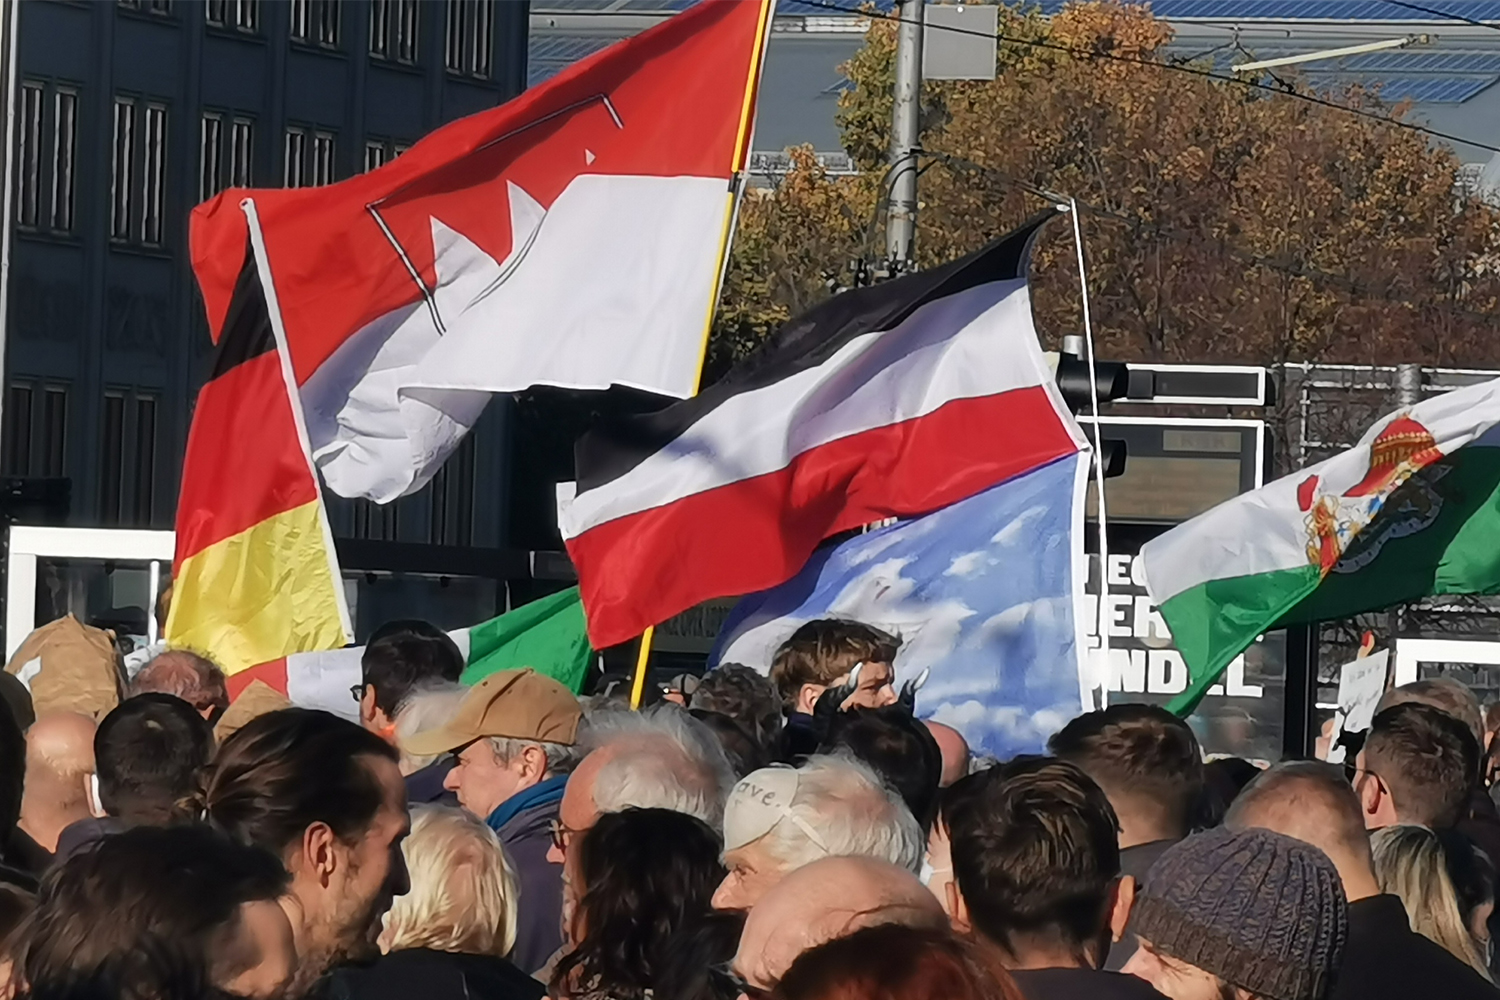 Es war nicht die einzige Reichsflaggen an diesem Tag, die sich unter das demonstrierende Querdenker-Volk mischte. © M. Lindner